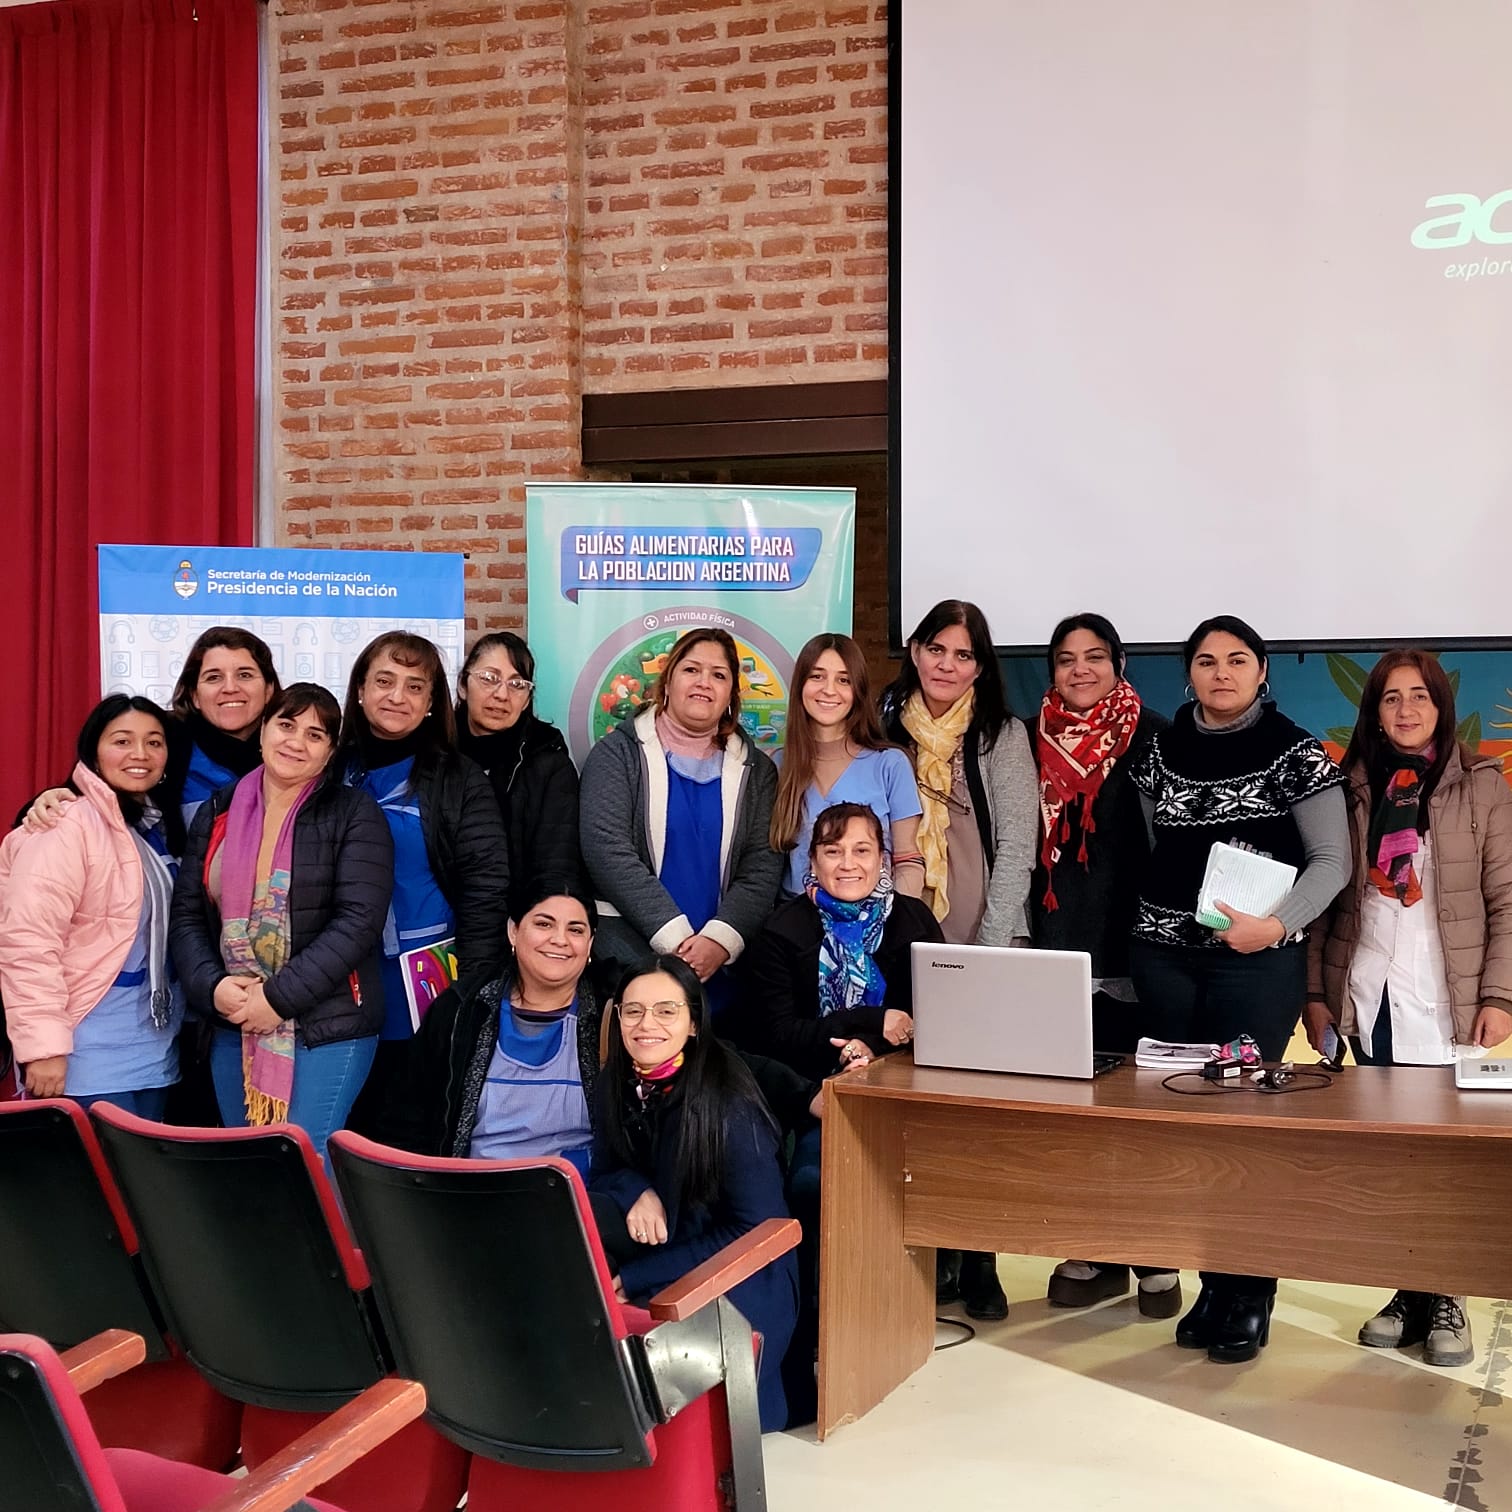 Educación capacitó a la comunidad educativa de La Paz en alimentación saludable13